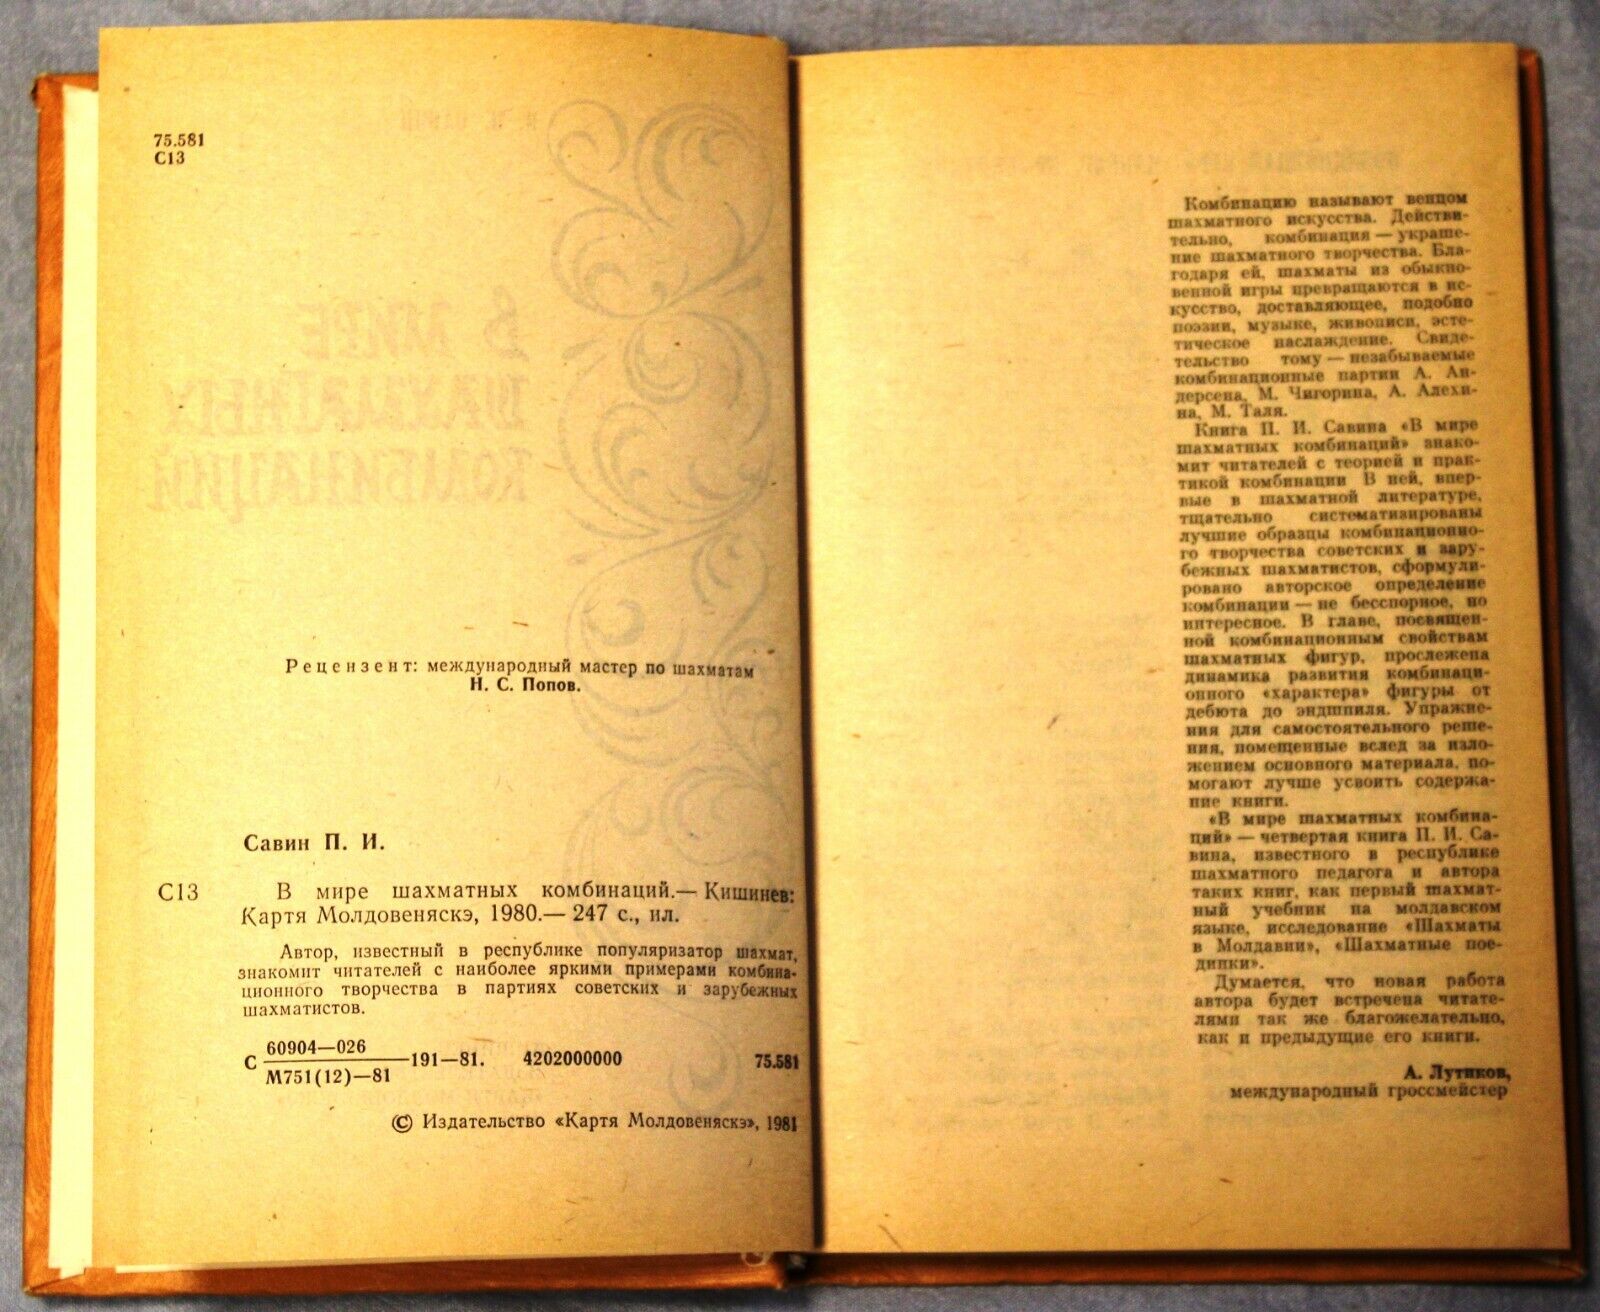 11708.Soviet Chess Book.Rare hard binding.World of chess combinations.Kishinev,1981